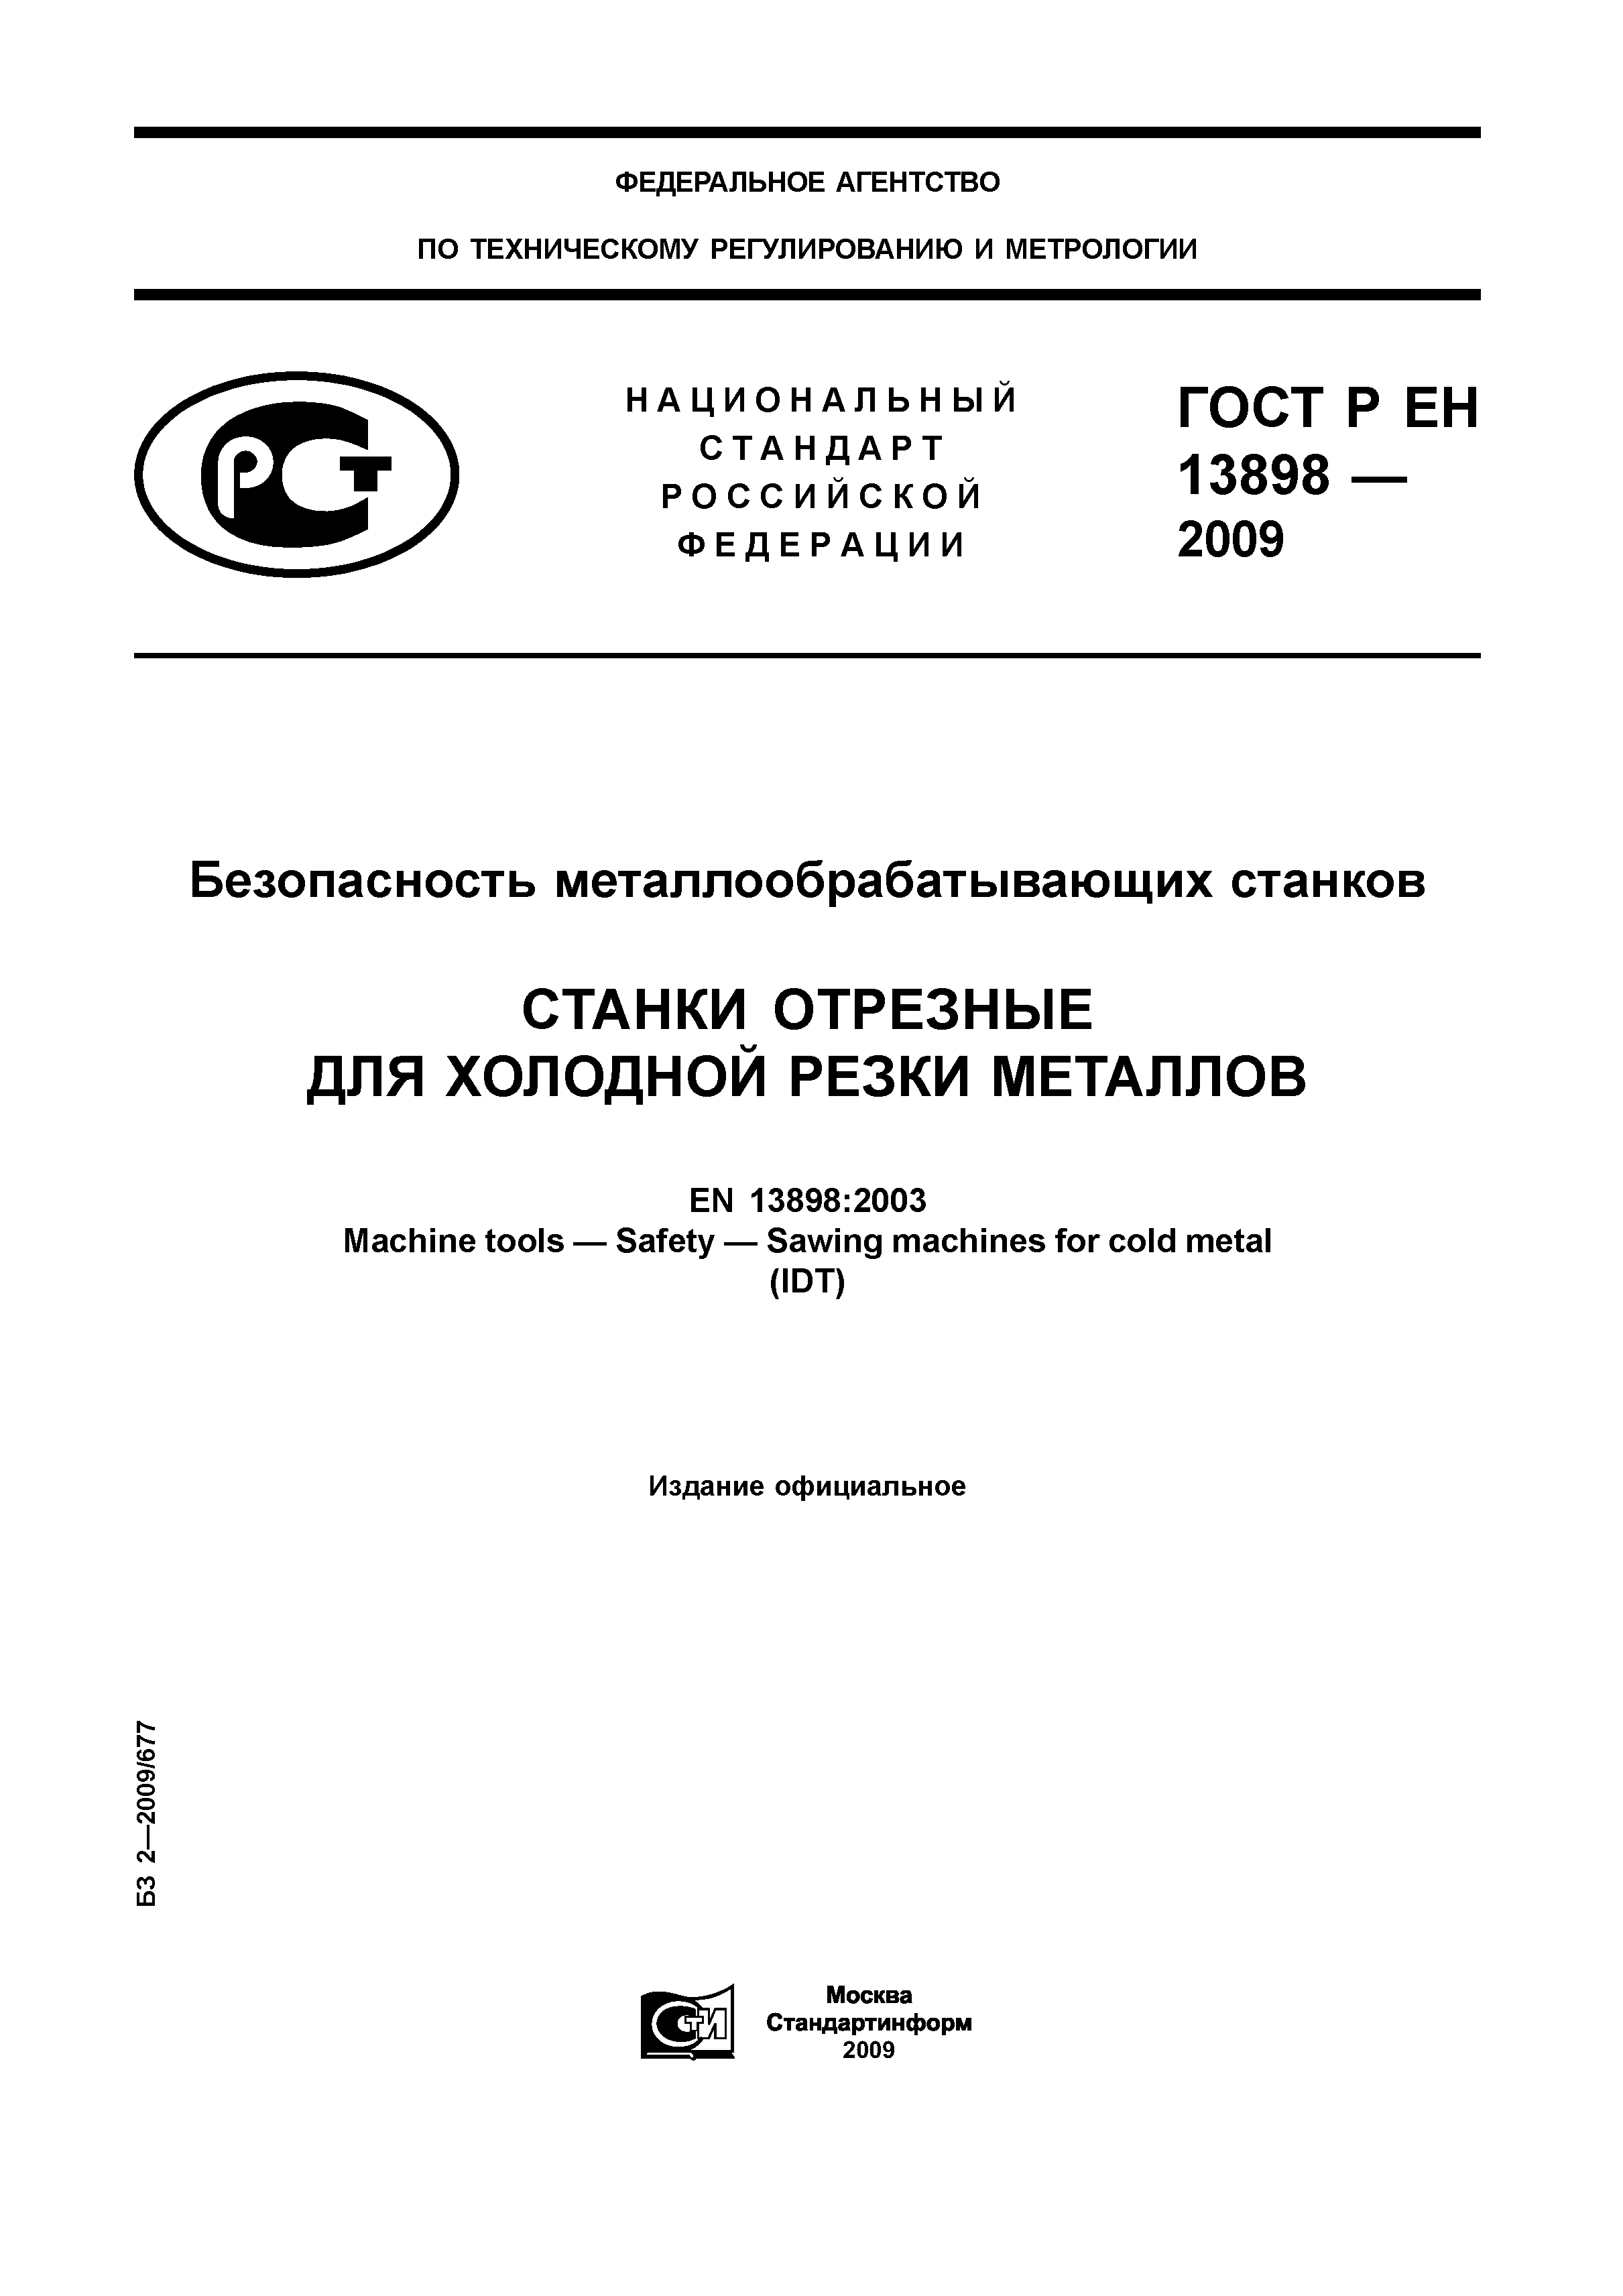 ГОСТ Р ЕН 13898-2009